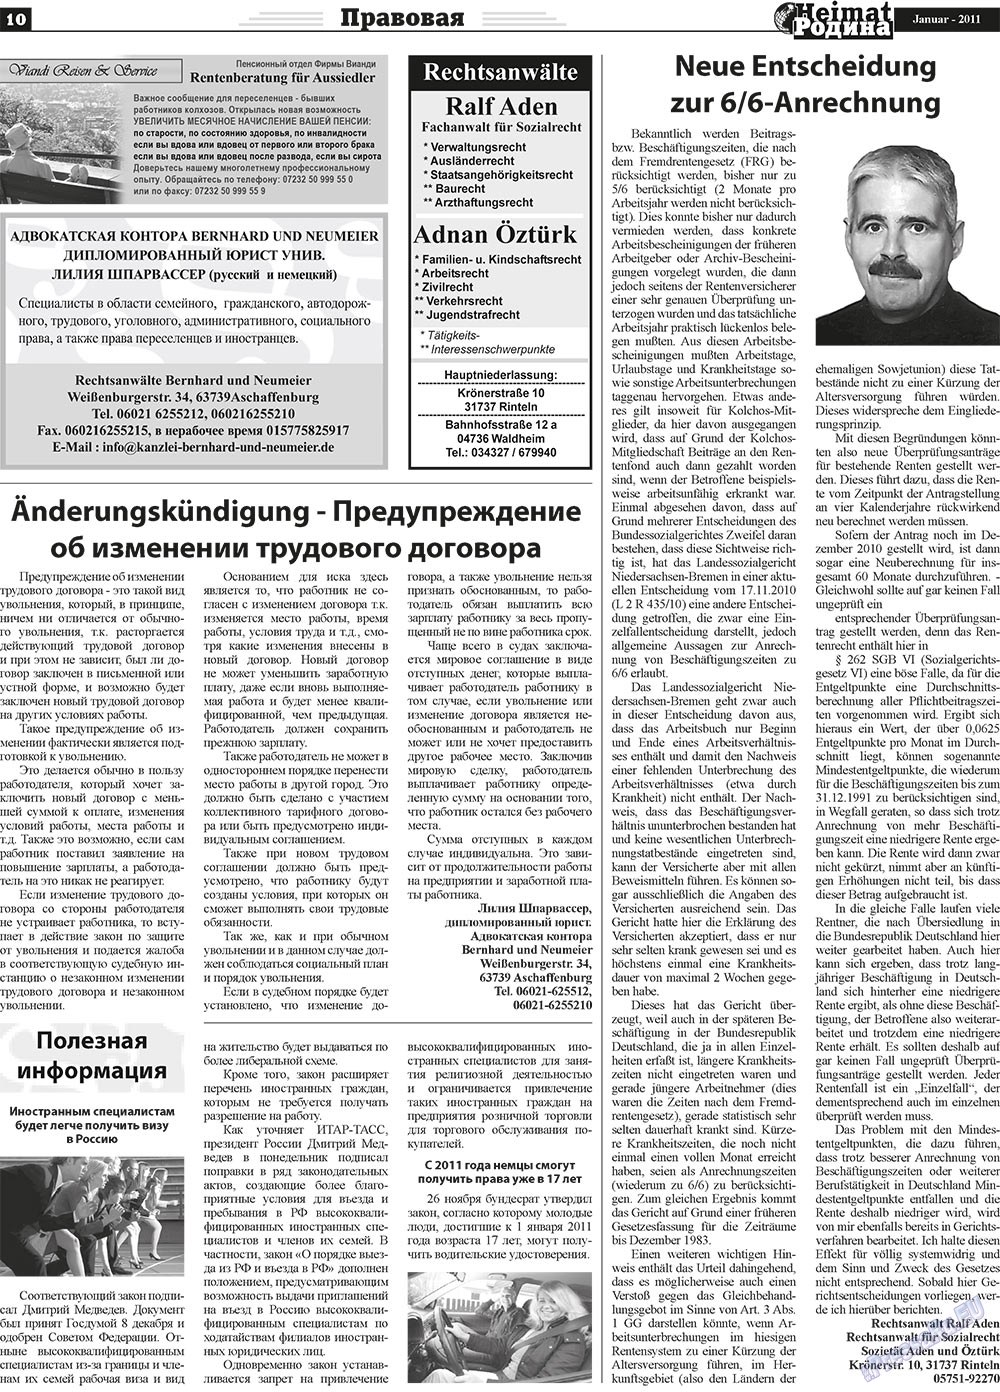 Heimat-Родина (газета). 2011 год, номер 1, стр. 10